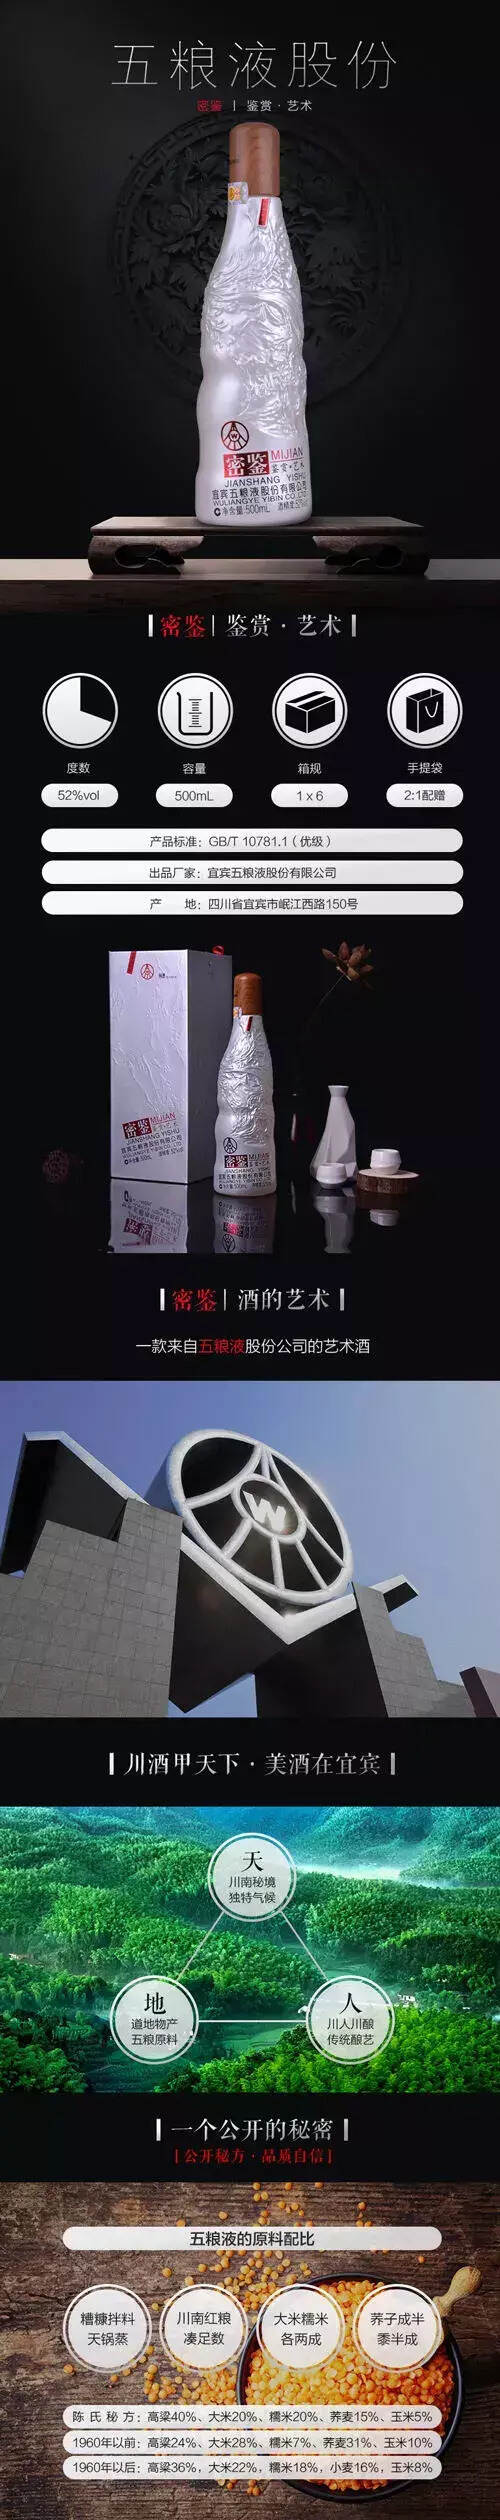 中国第一款艺术白酒——五粮液密鉴